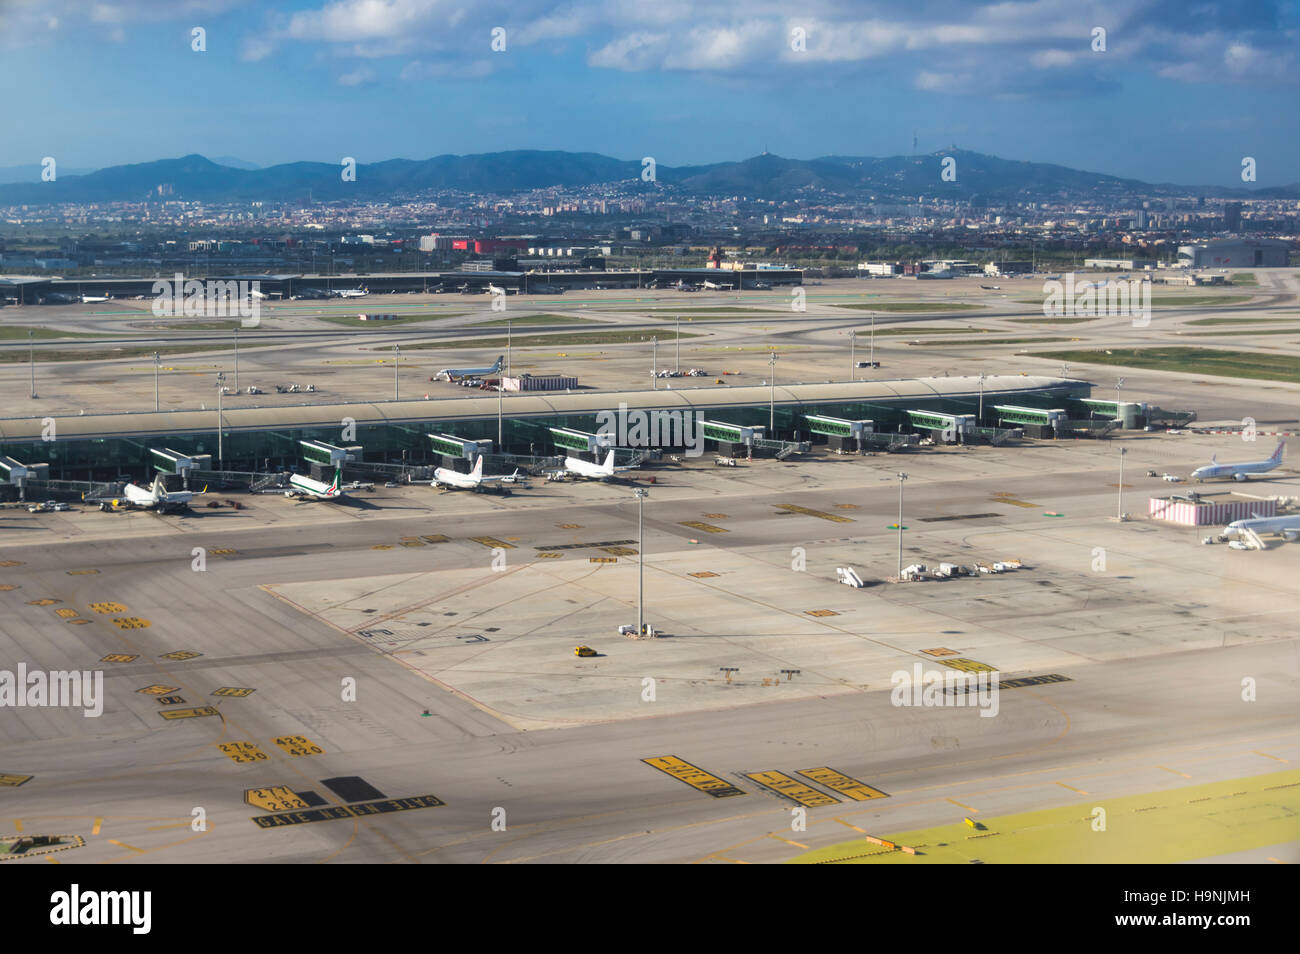 La fotografia aerea di Barcellona El Prat aeroporto internazionale con il terminale T1 in primo piano. Foto Stock